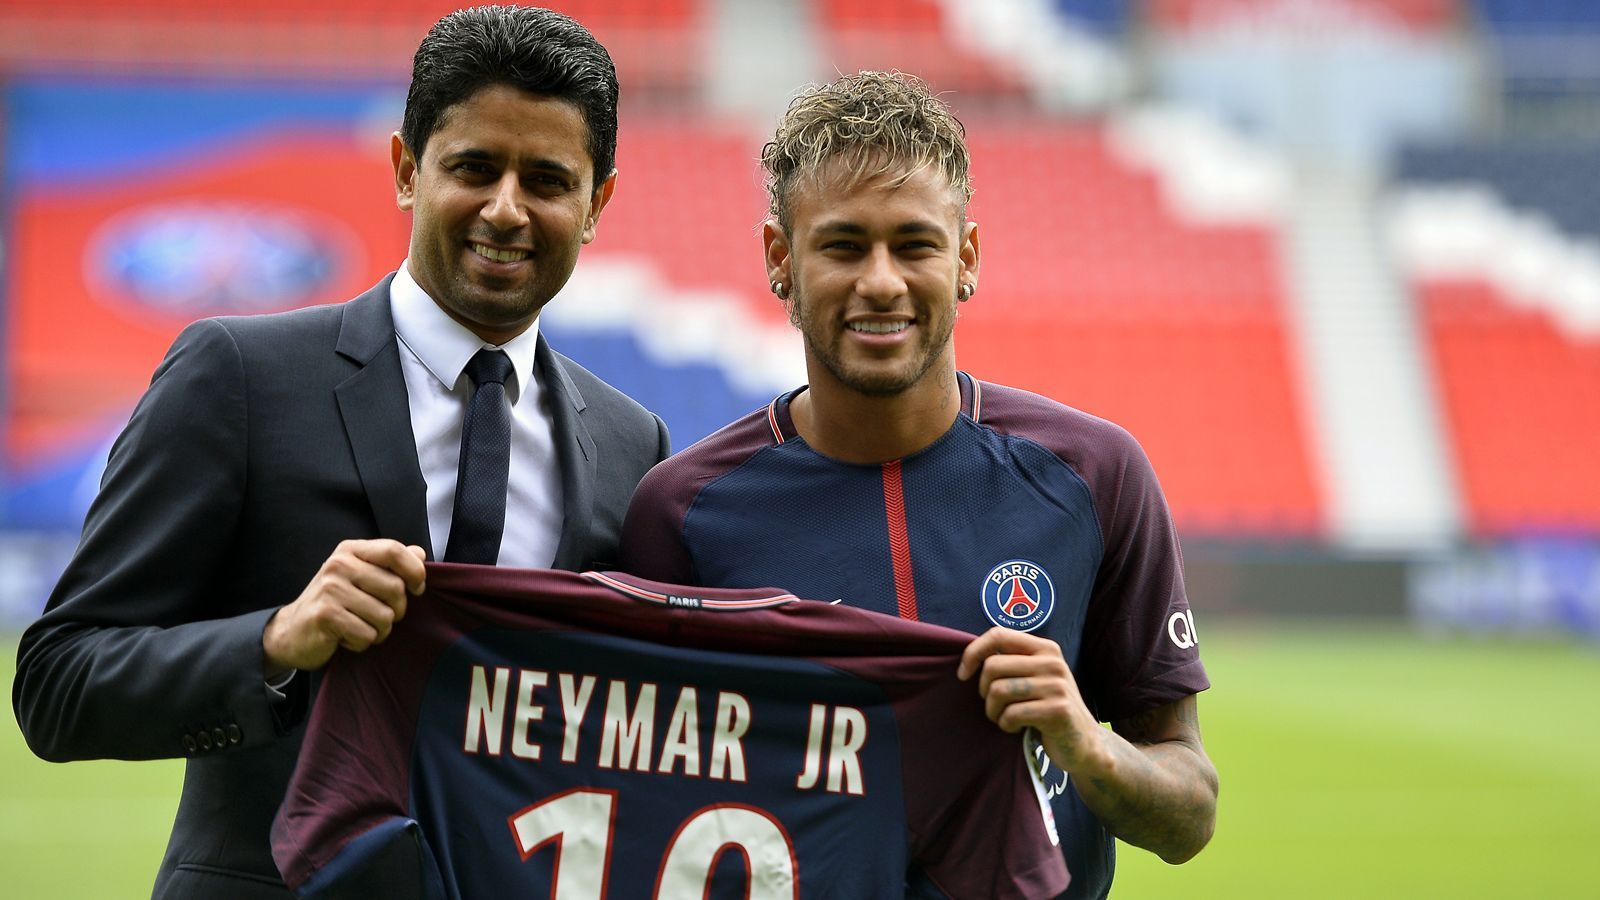 
                <strong>2017: Neymar</strong><br>
                &#x2022; Ablösesumme: 222 Millionen Euro<br>&#x2022; Aufnehmender Verein: Paris St. Germain<br>&#x2022; Abgebender Verein: FC Barcelona<br>
              